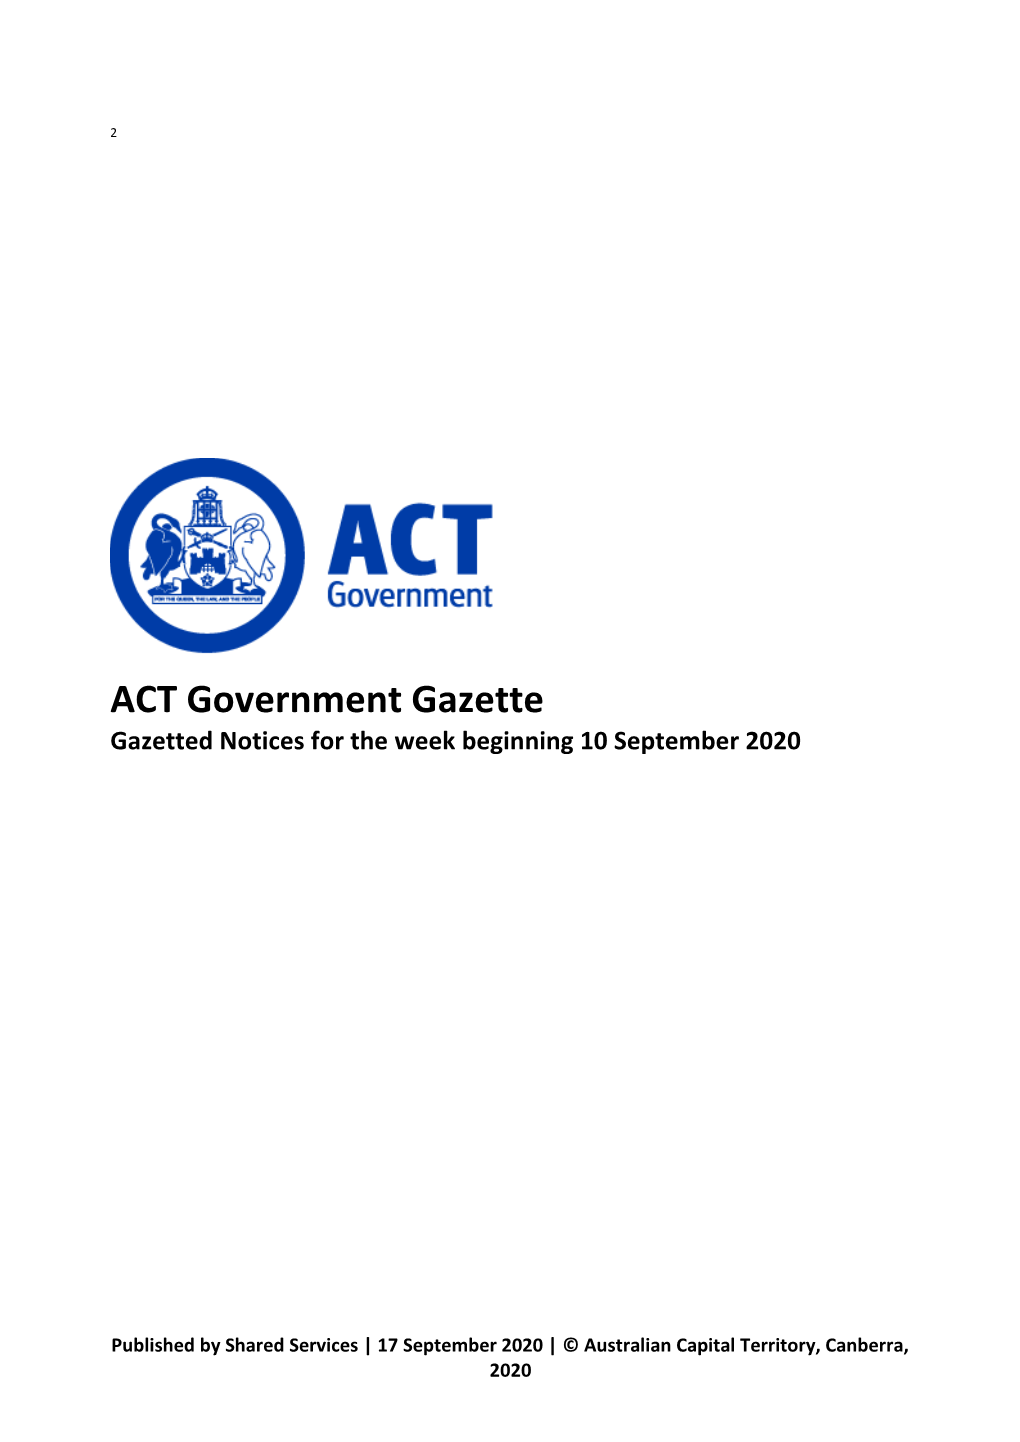 ACT Government Gazette 17 Sep 2020